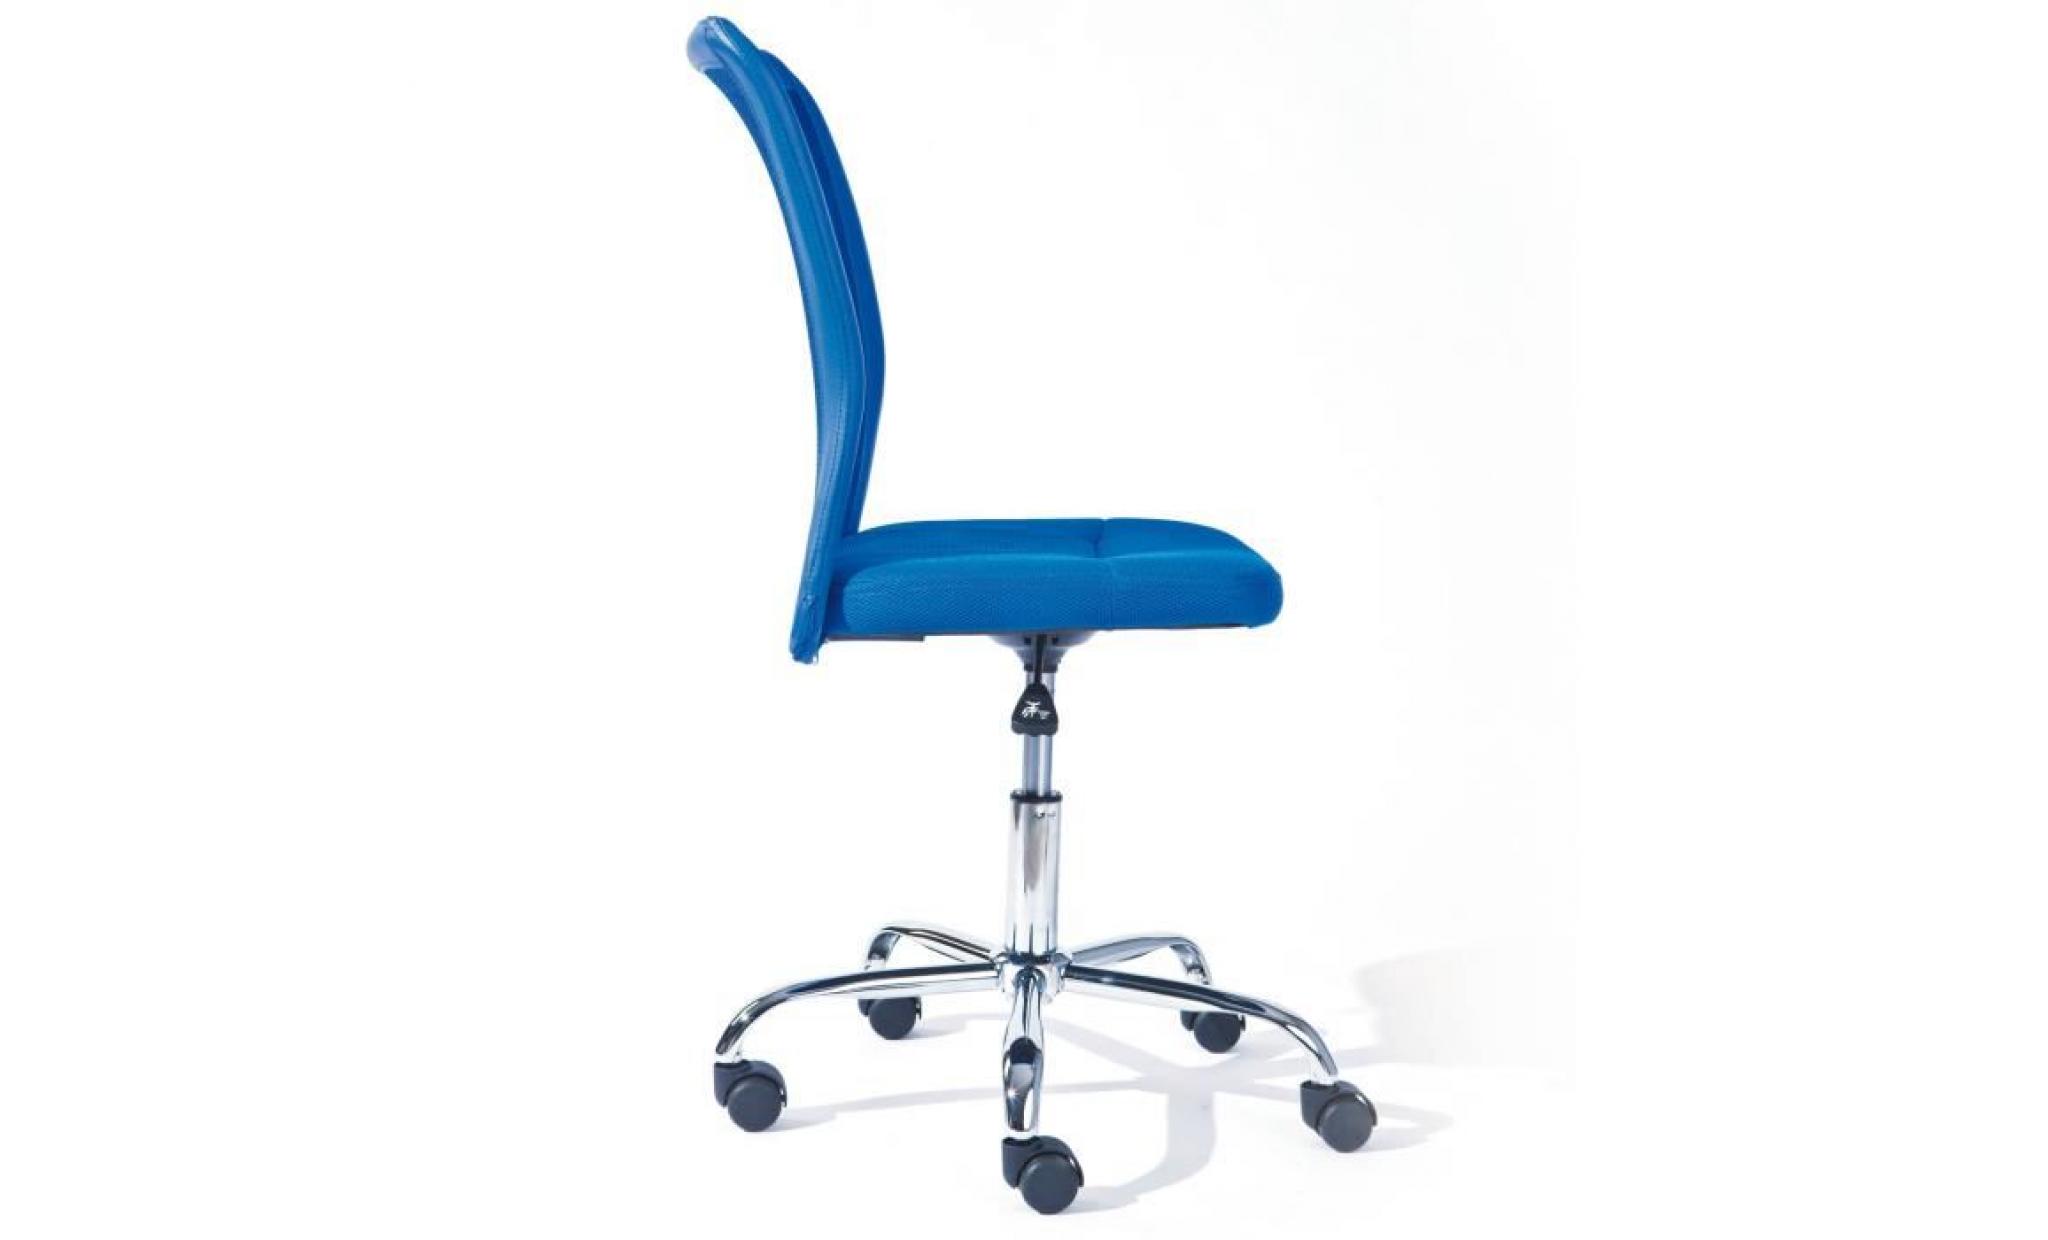 chaise de bureau bonnie siège fauteuil pivotant ergonomique sur roulettes bleu pas cher